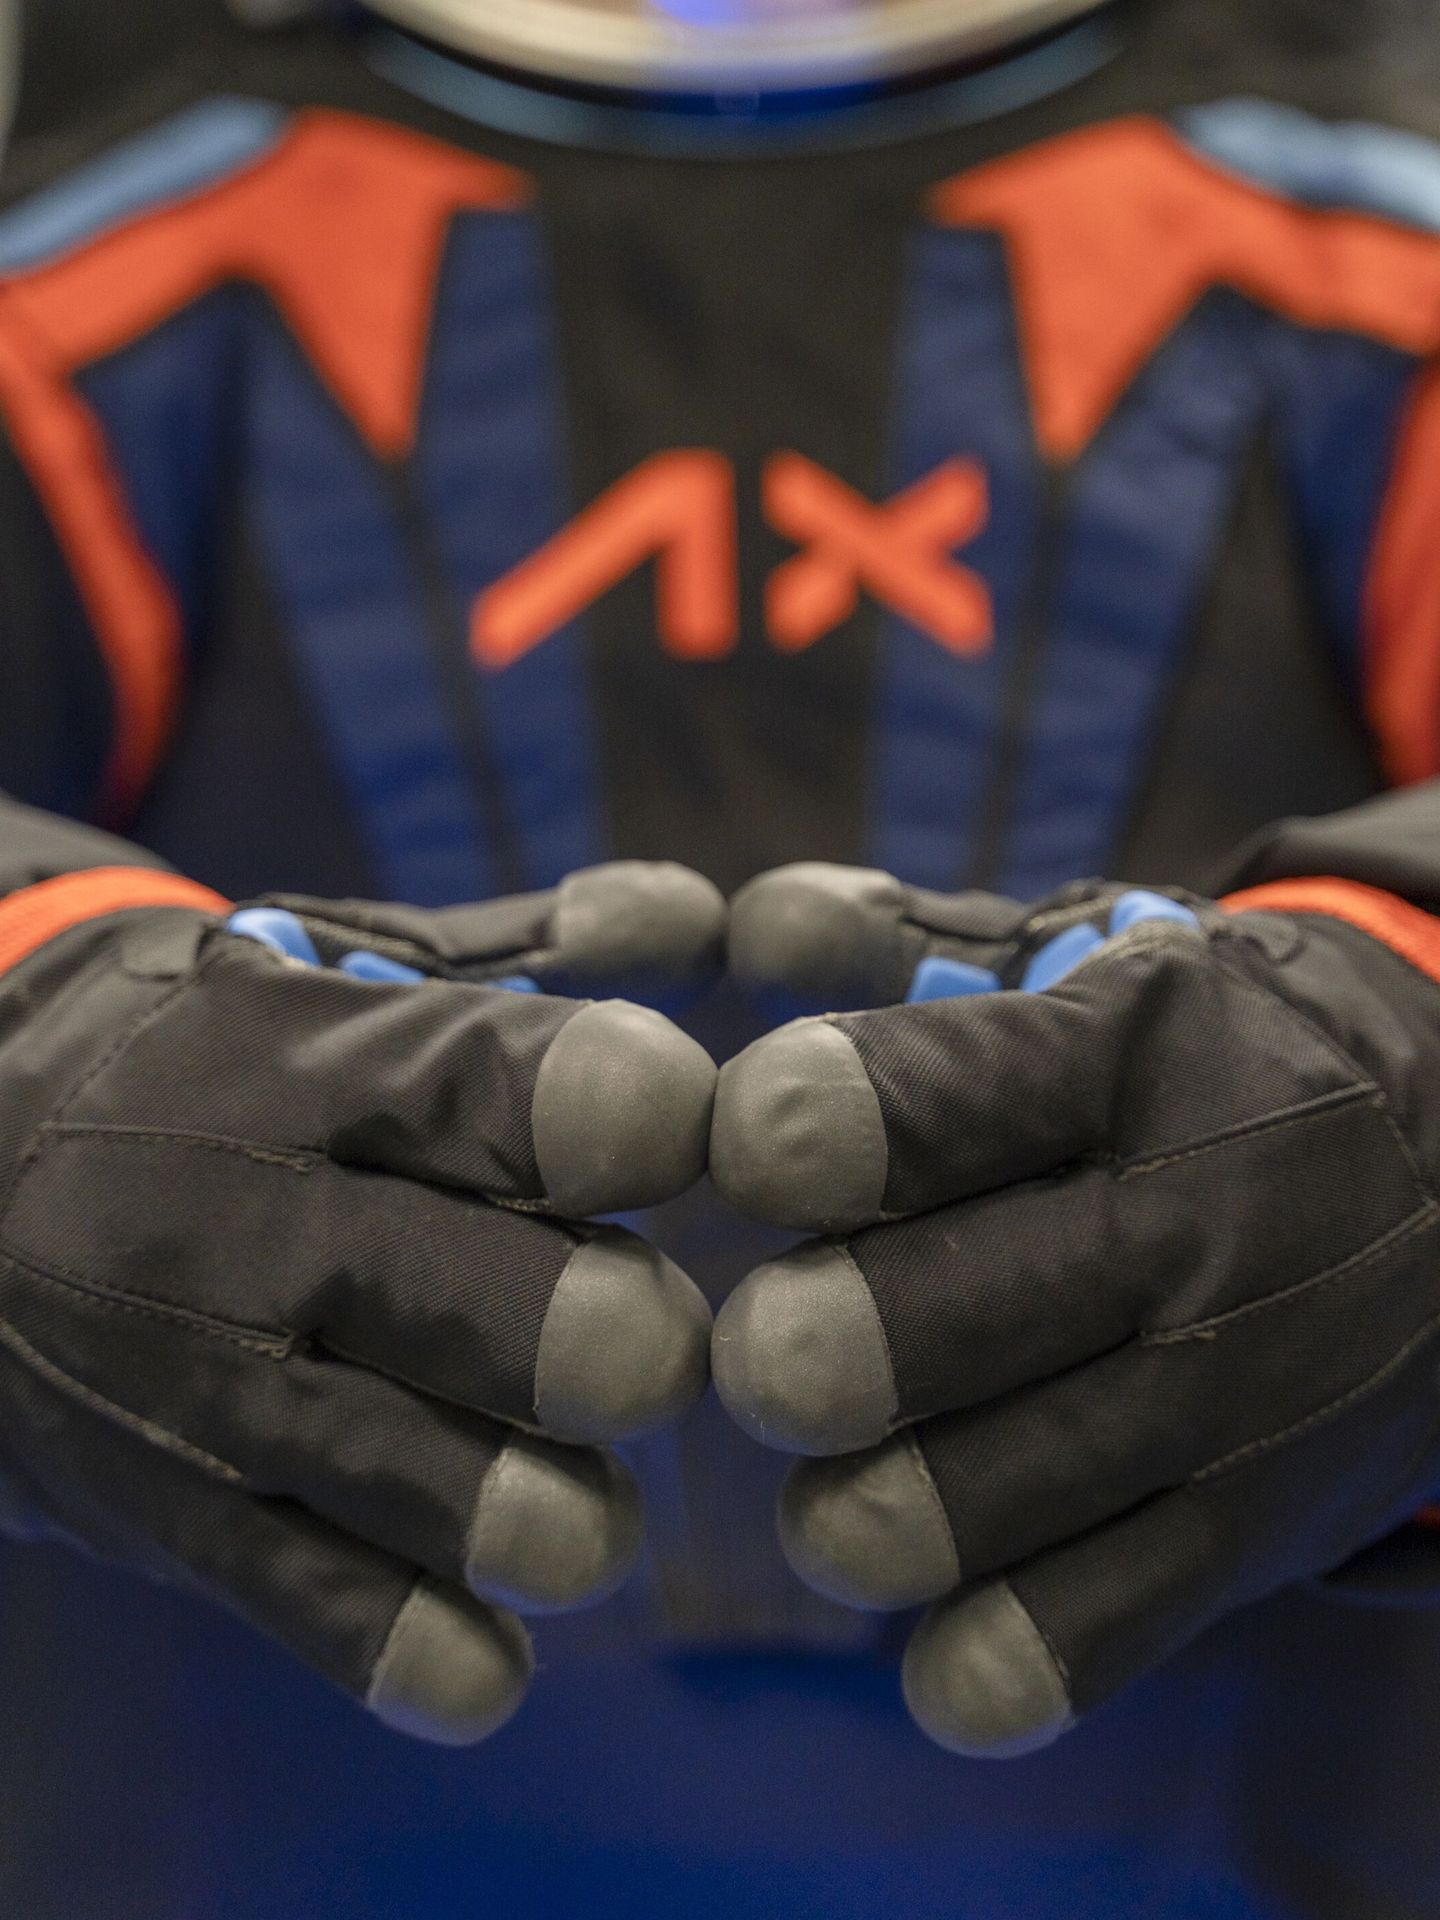 Prototipo de los guantes que usarán los astronautas (EFE/Axiom Space)